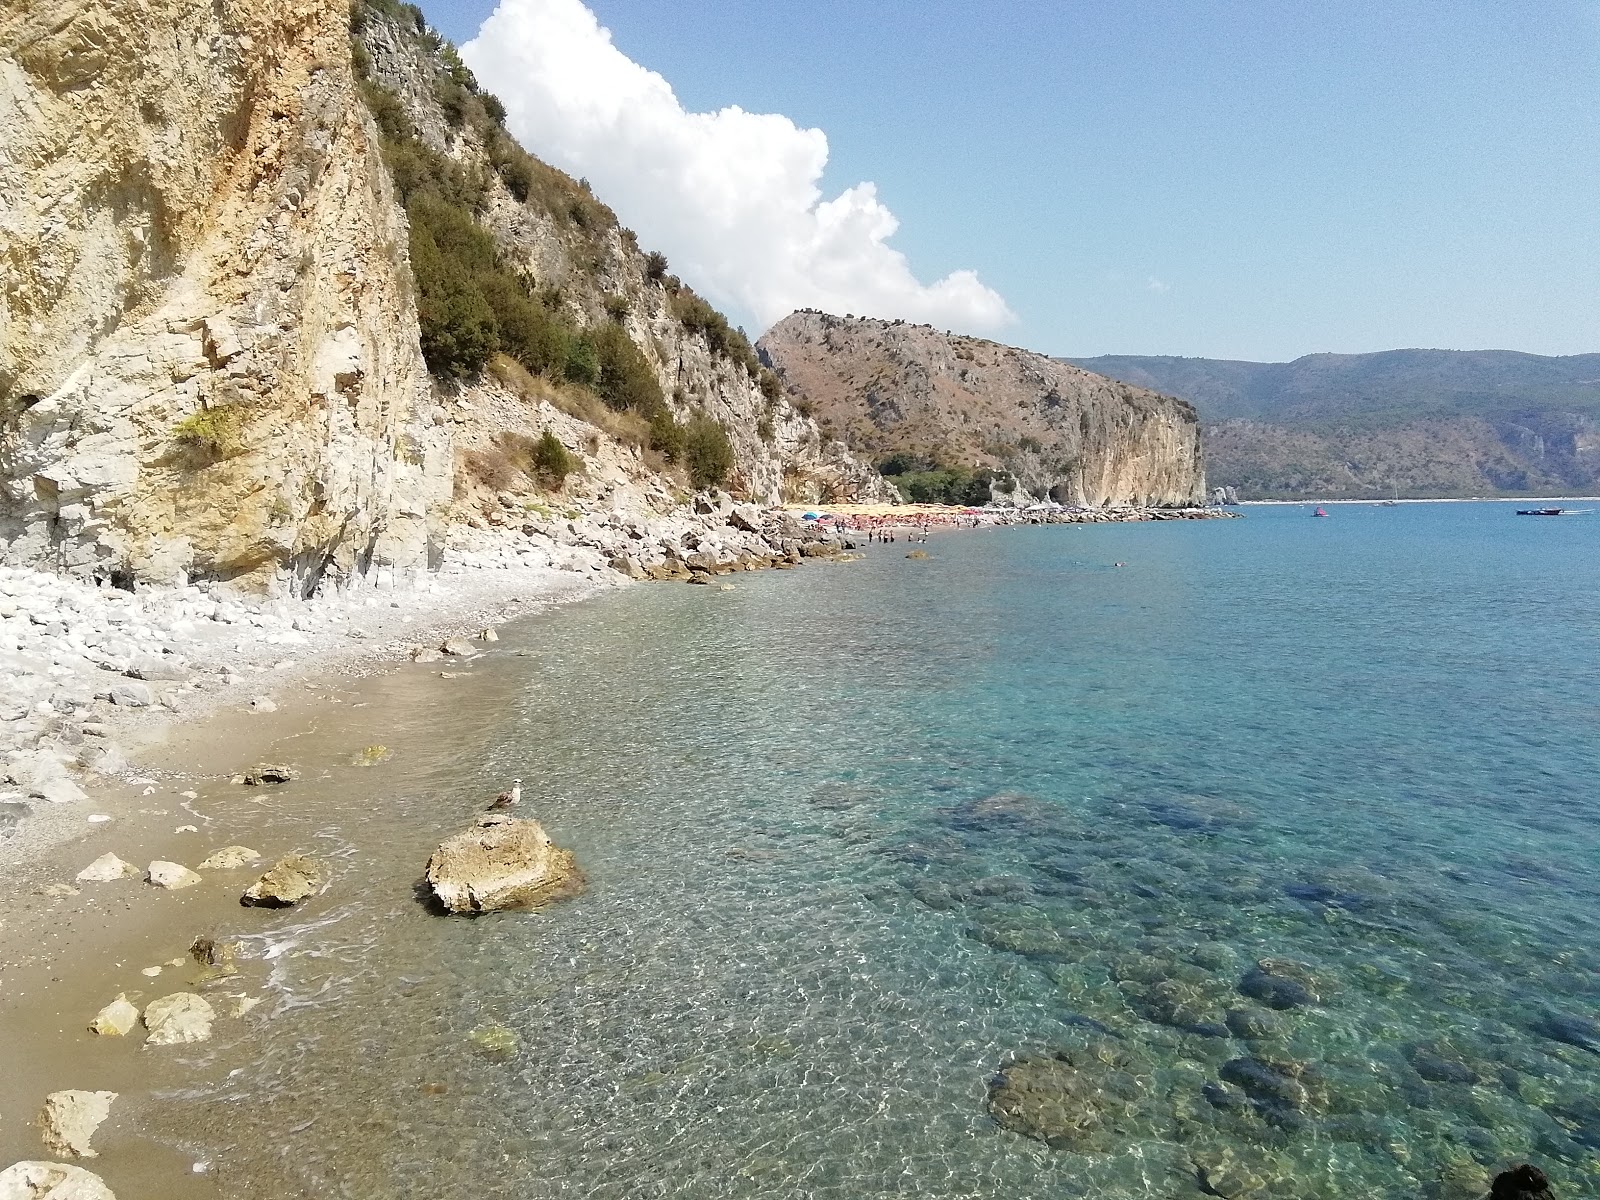 Valokuva Spiaggia Marinellaista. ympäröity vuorilla